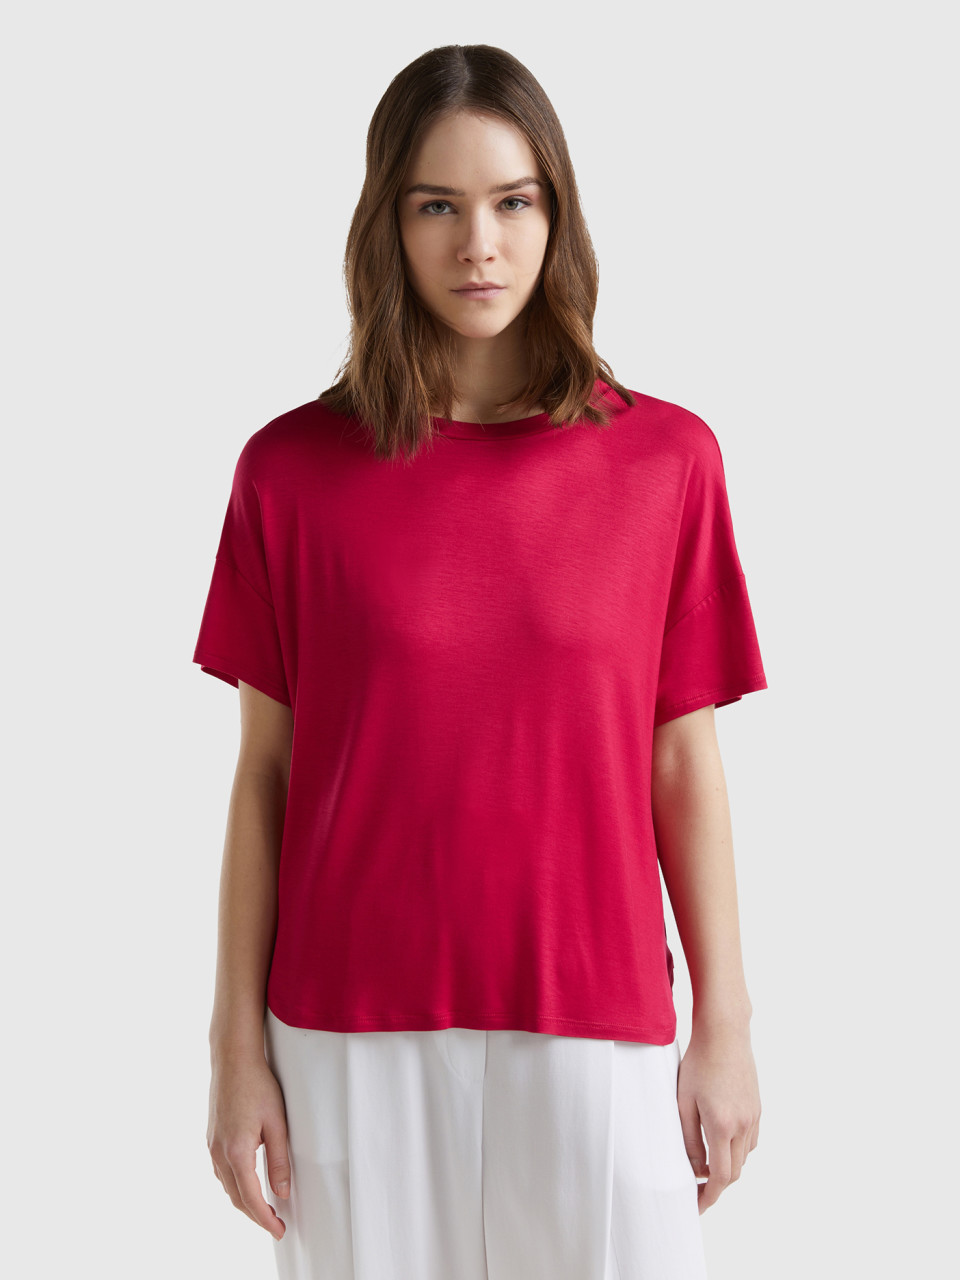 Benetton, Camiseta De Viscosa Sostenible Elástica, Ciclamen, Mujer